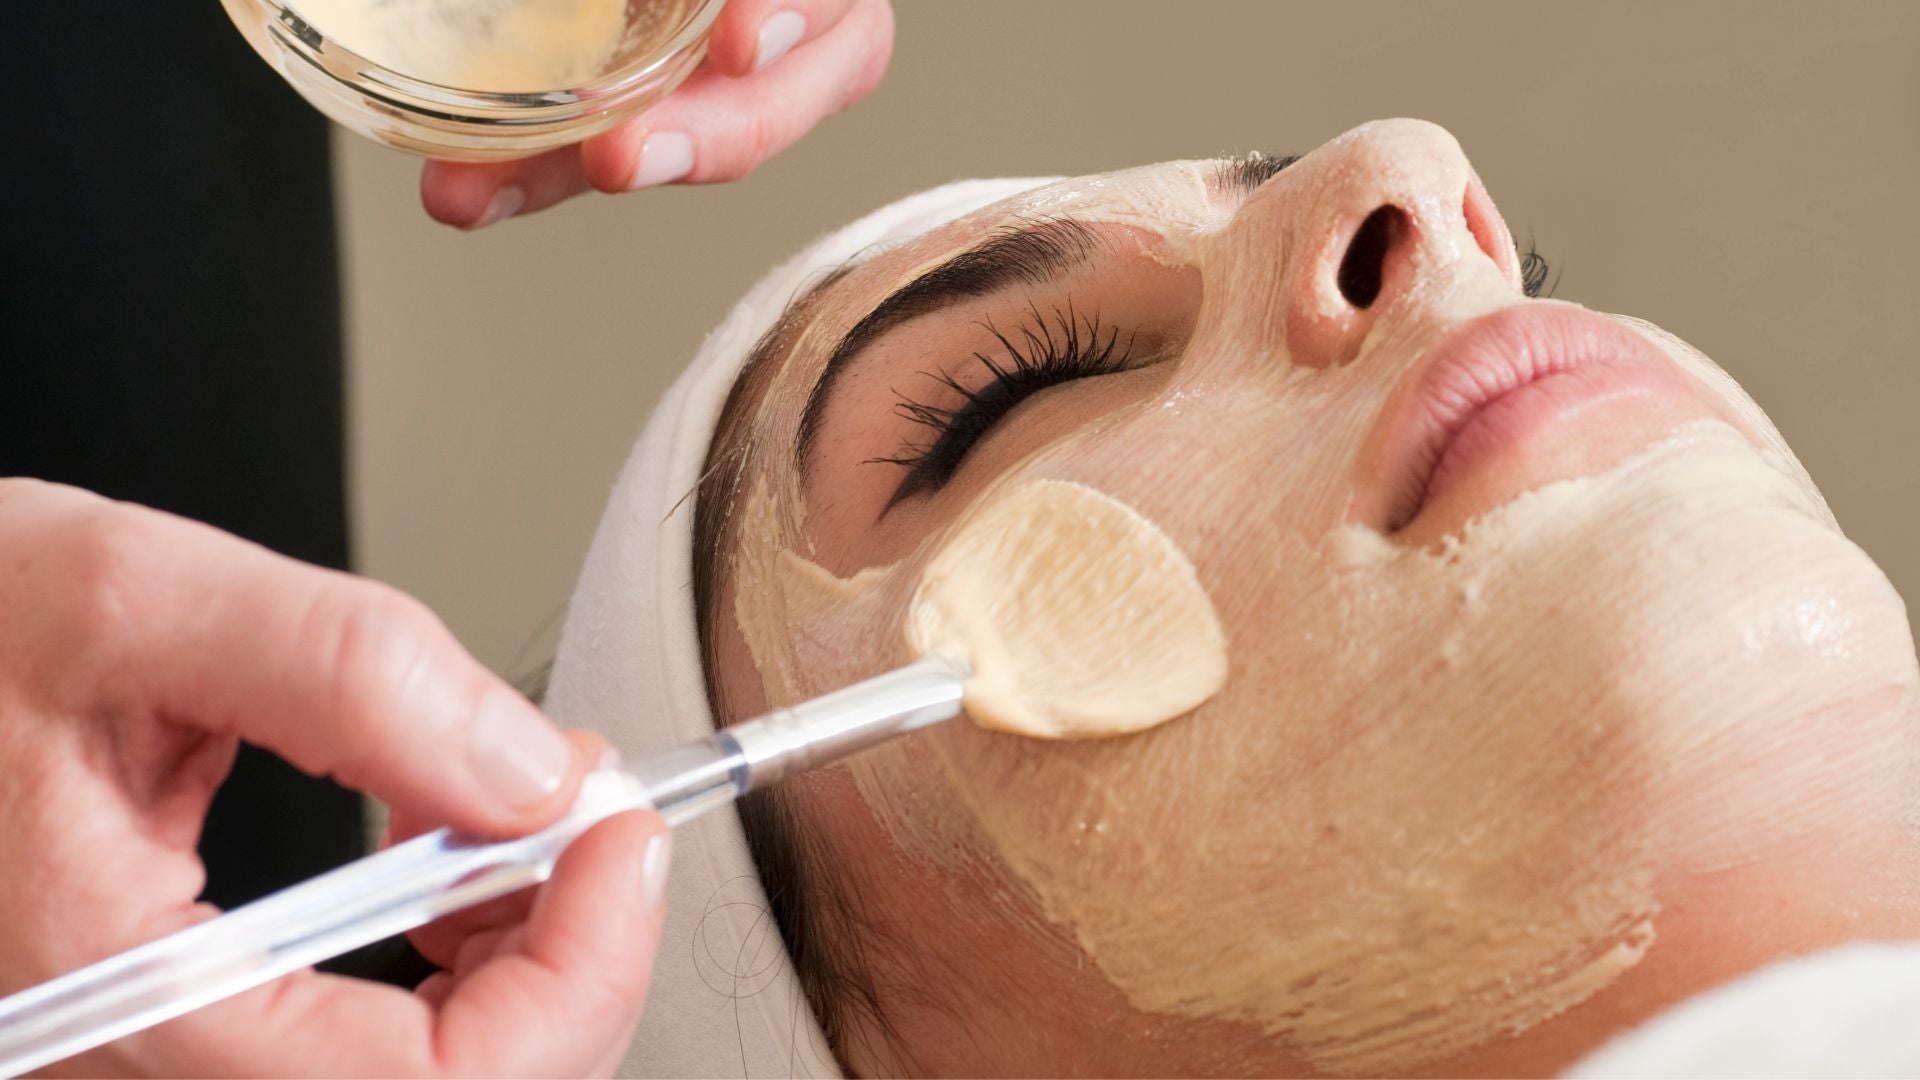 Woman getting a facial skin treatment